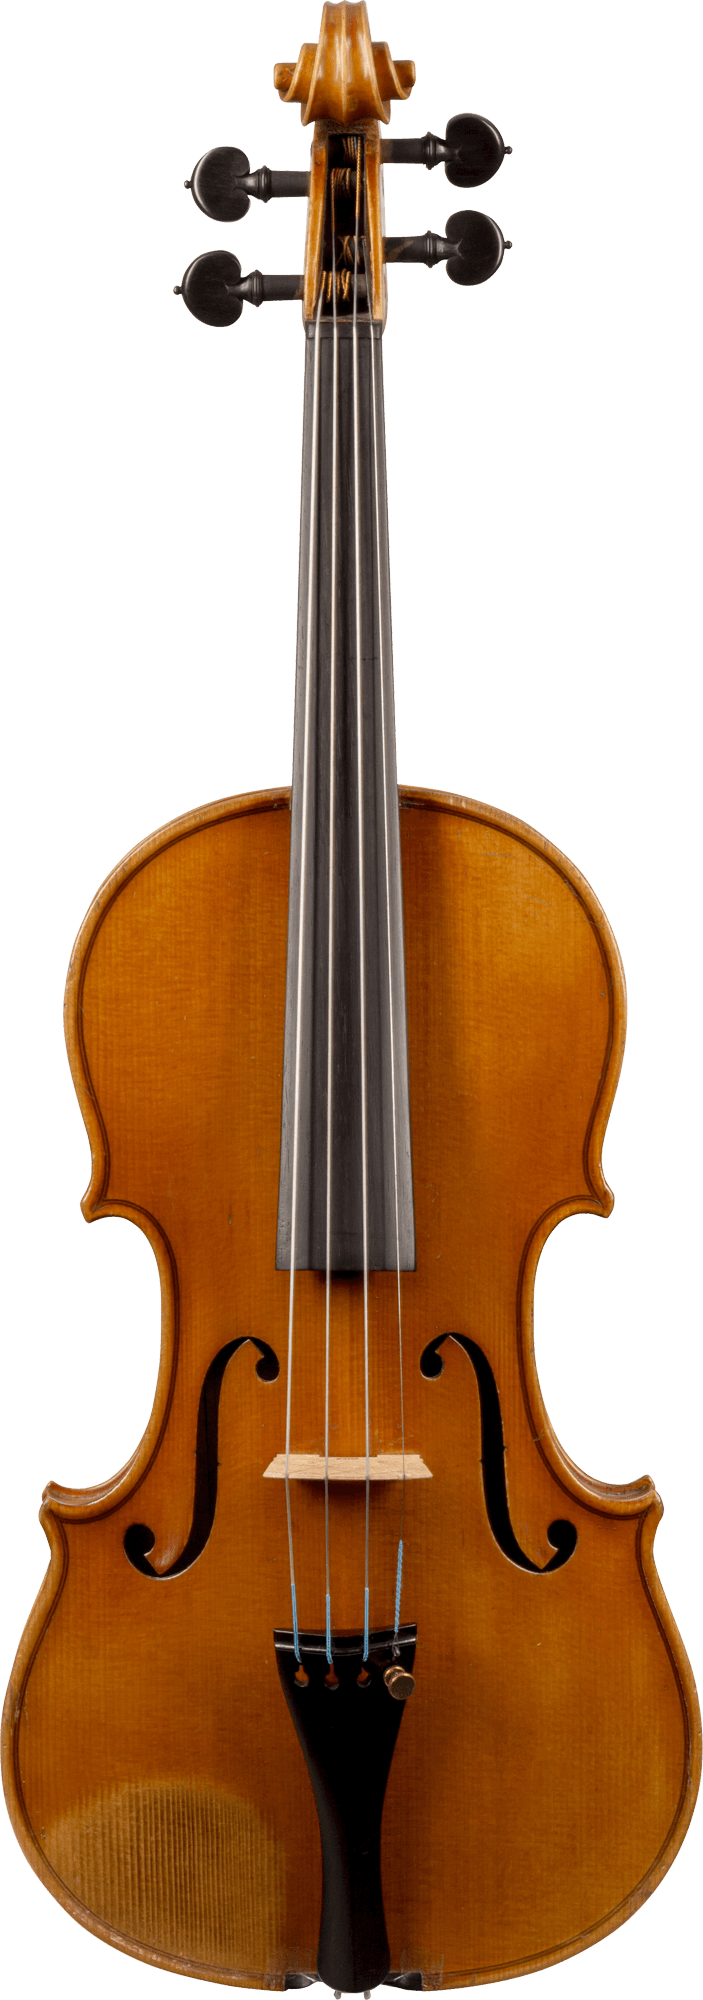 Hermann Todt Violin, Markneukirchen, 1922